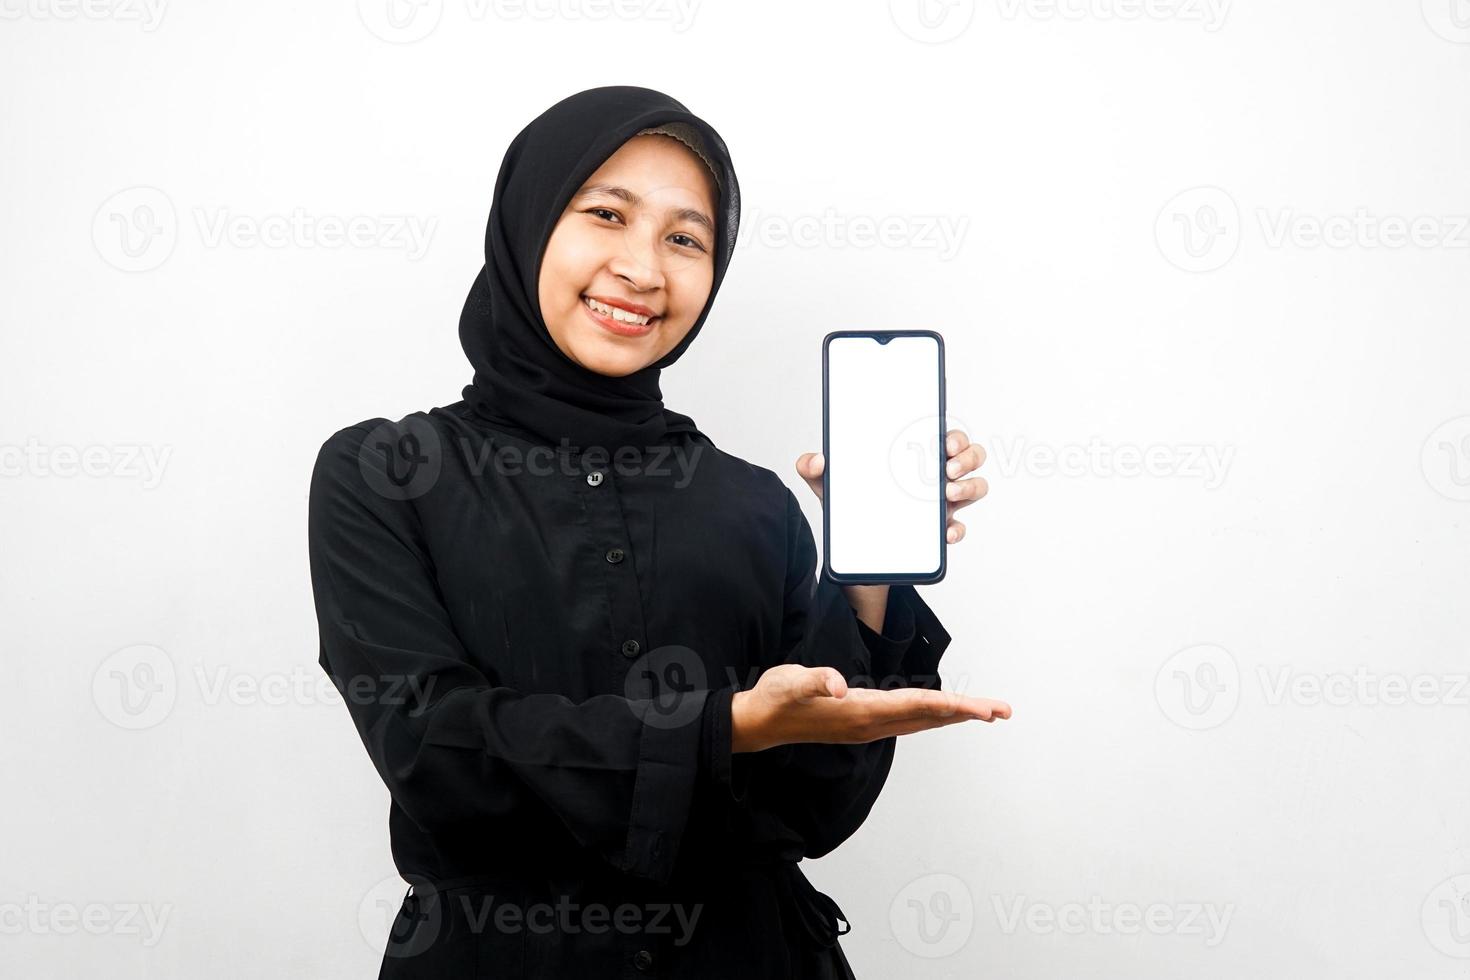 Mooie jonge Aziatische moslimvrouw glimlachend vol vertrouwen en opgewonden met handen met smartphone, app promoten, iets promoten, geïsoleerd op een witte achtergrond, reclame concept foto